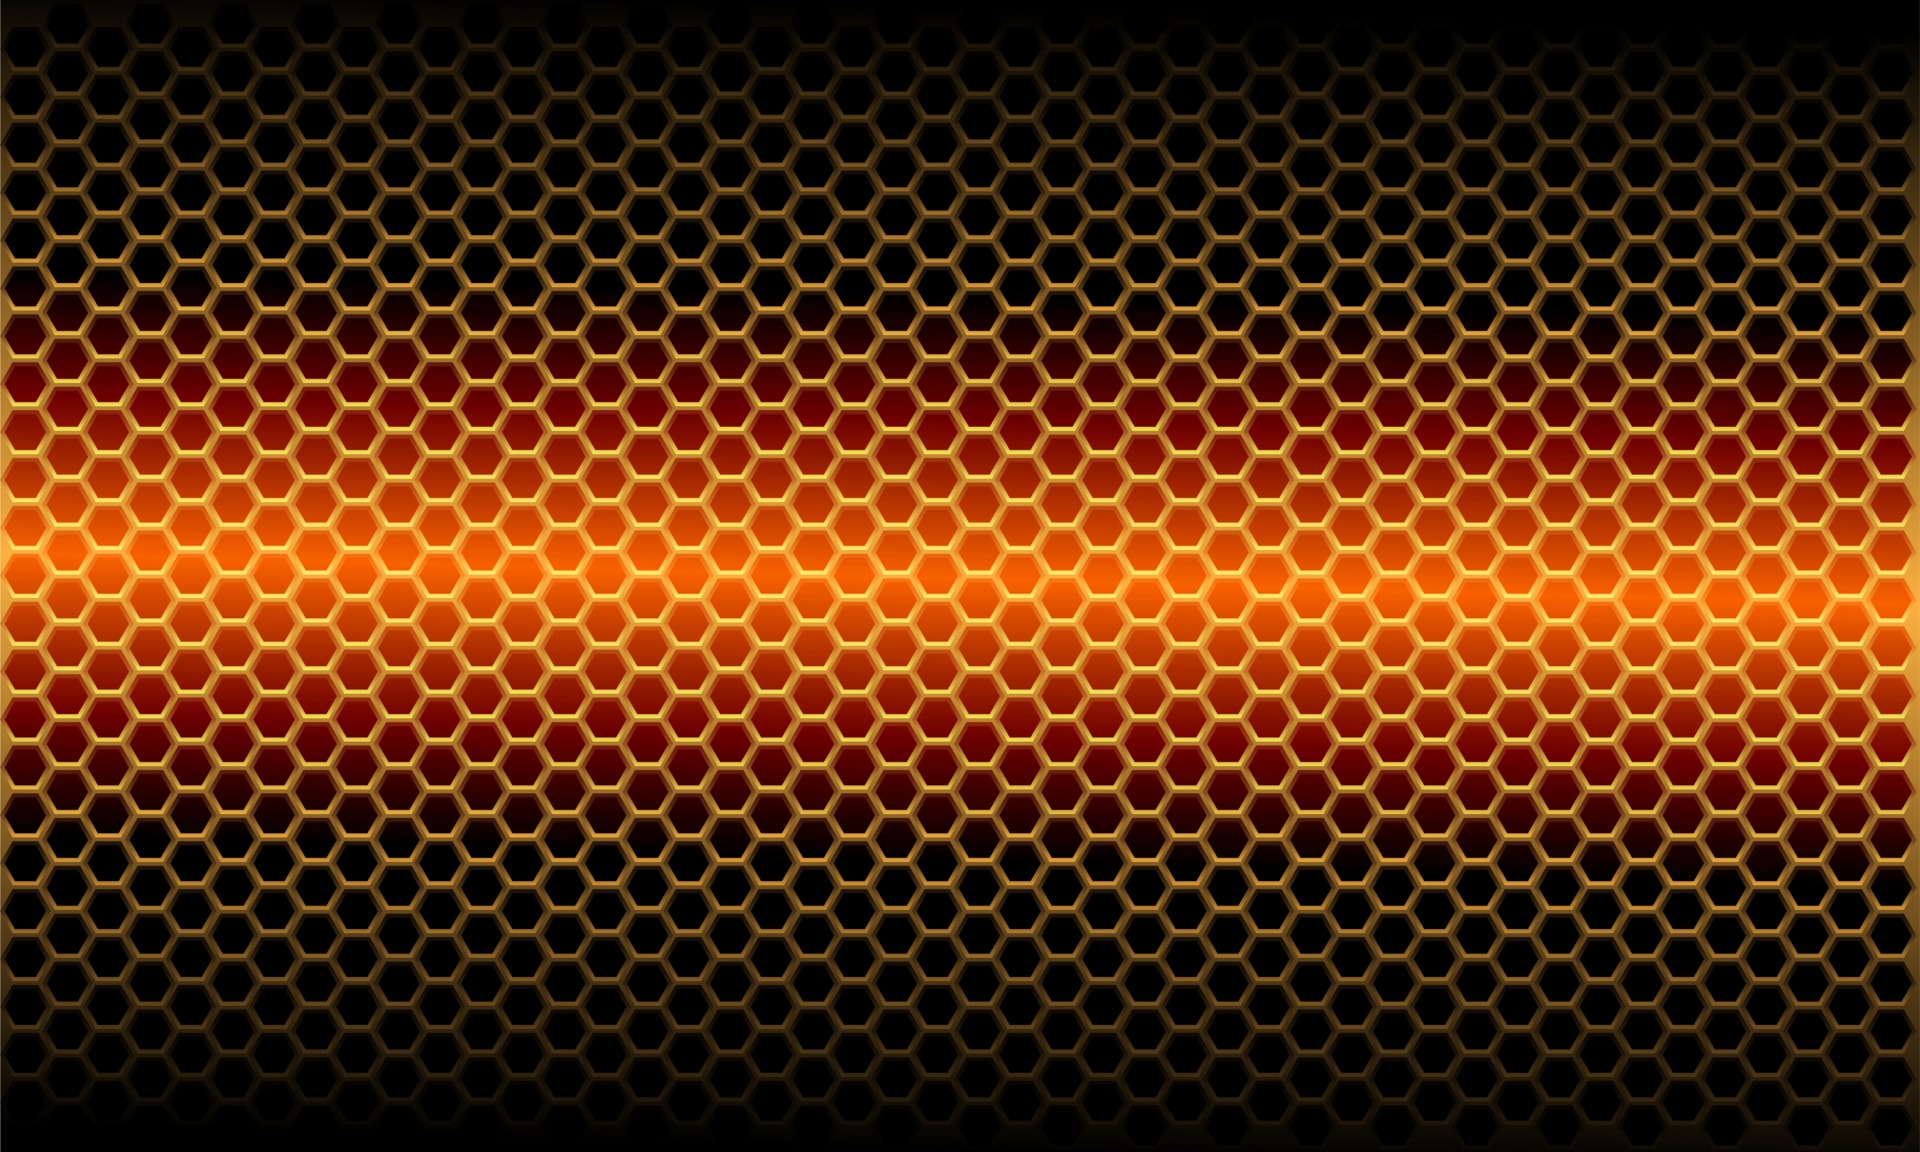 Thưởng thức hình khối lục giác kim loại mạ ánh sáng cam trên nền đen, bạn sẽ bị quyến rũ bởi sự kết hợp độc đáo giữa màu sắc và họa tiết. Bức tranh trừu tượng đầy cảm hứng này chắc chắn sẽ làm nổi bật bất kỳ không gian nào và tạo ra ấn tượng đẹp.